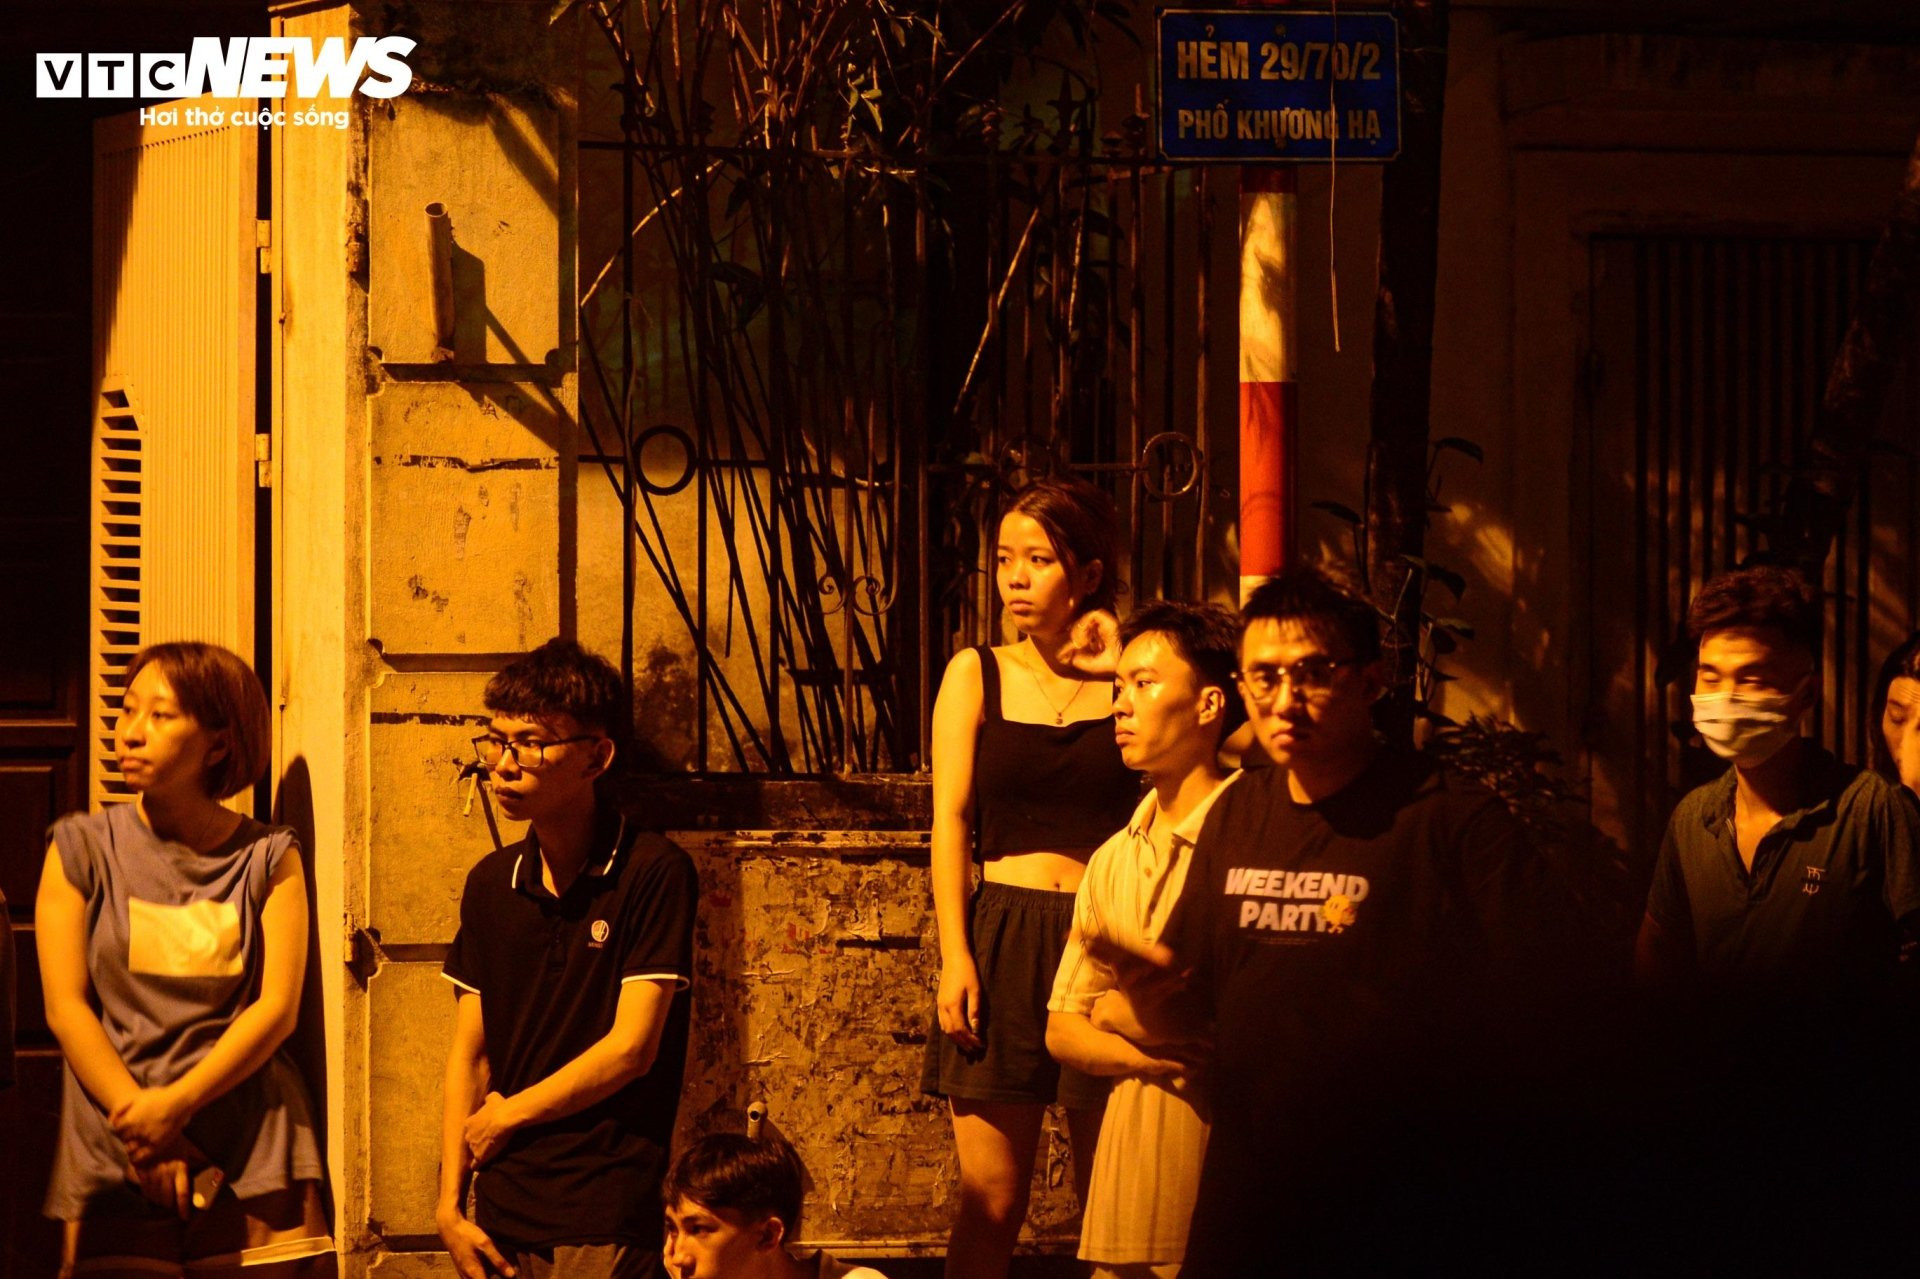 Hiện trường vụ cháy chung cư mini ở Hà Nội trong đêm, nhiều người ngất xỉu - 6